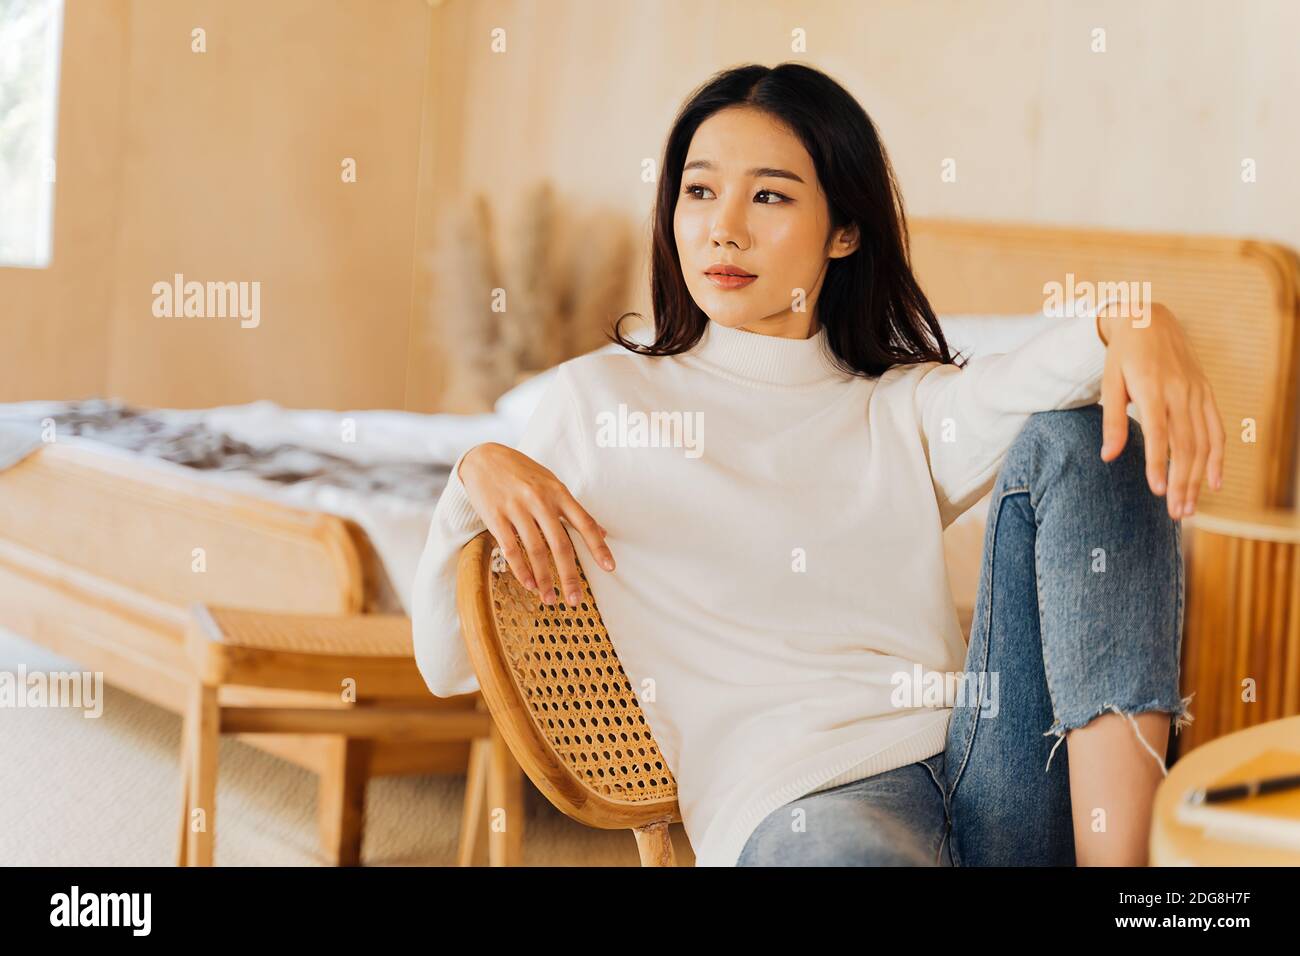 20s junge Teenager asiatische Frau trägt einen Pullover Blick weg in stilvollen gemütlichen Raum Hintergrund. Attraktive weibliche Modell posiert für Kamera auf Stuhl. Winter Portrait Mode Lifestyle. Platz für die Banner-Kopie Stockfoto